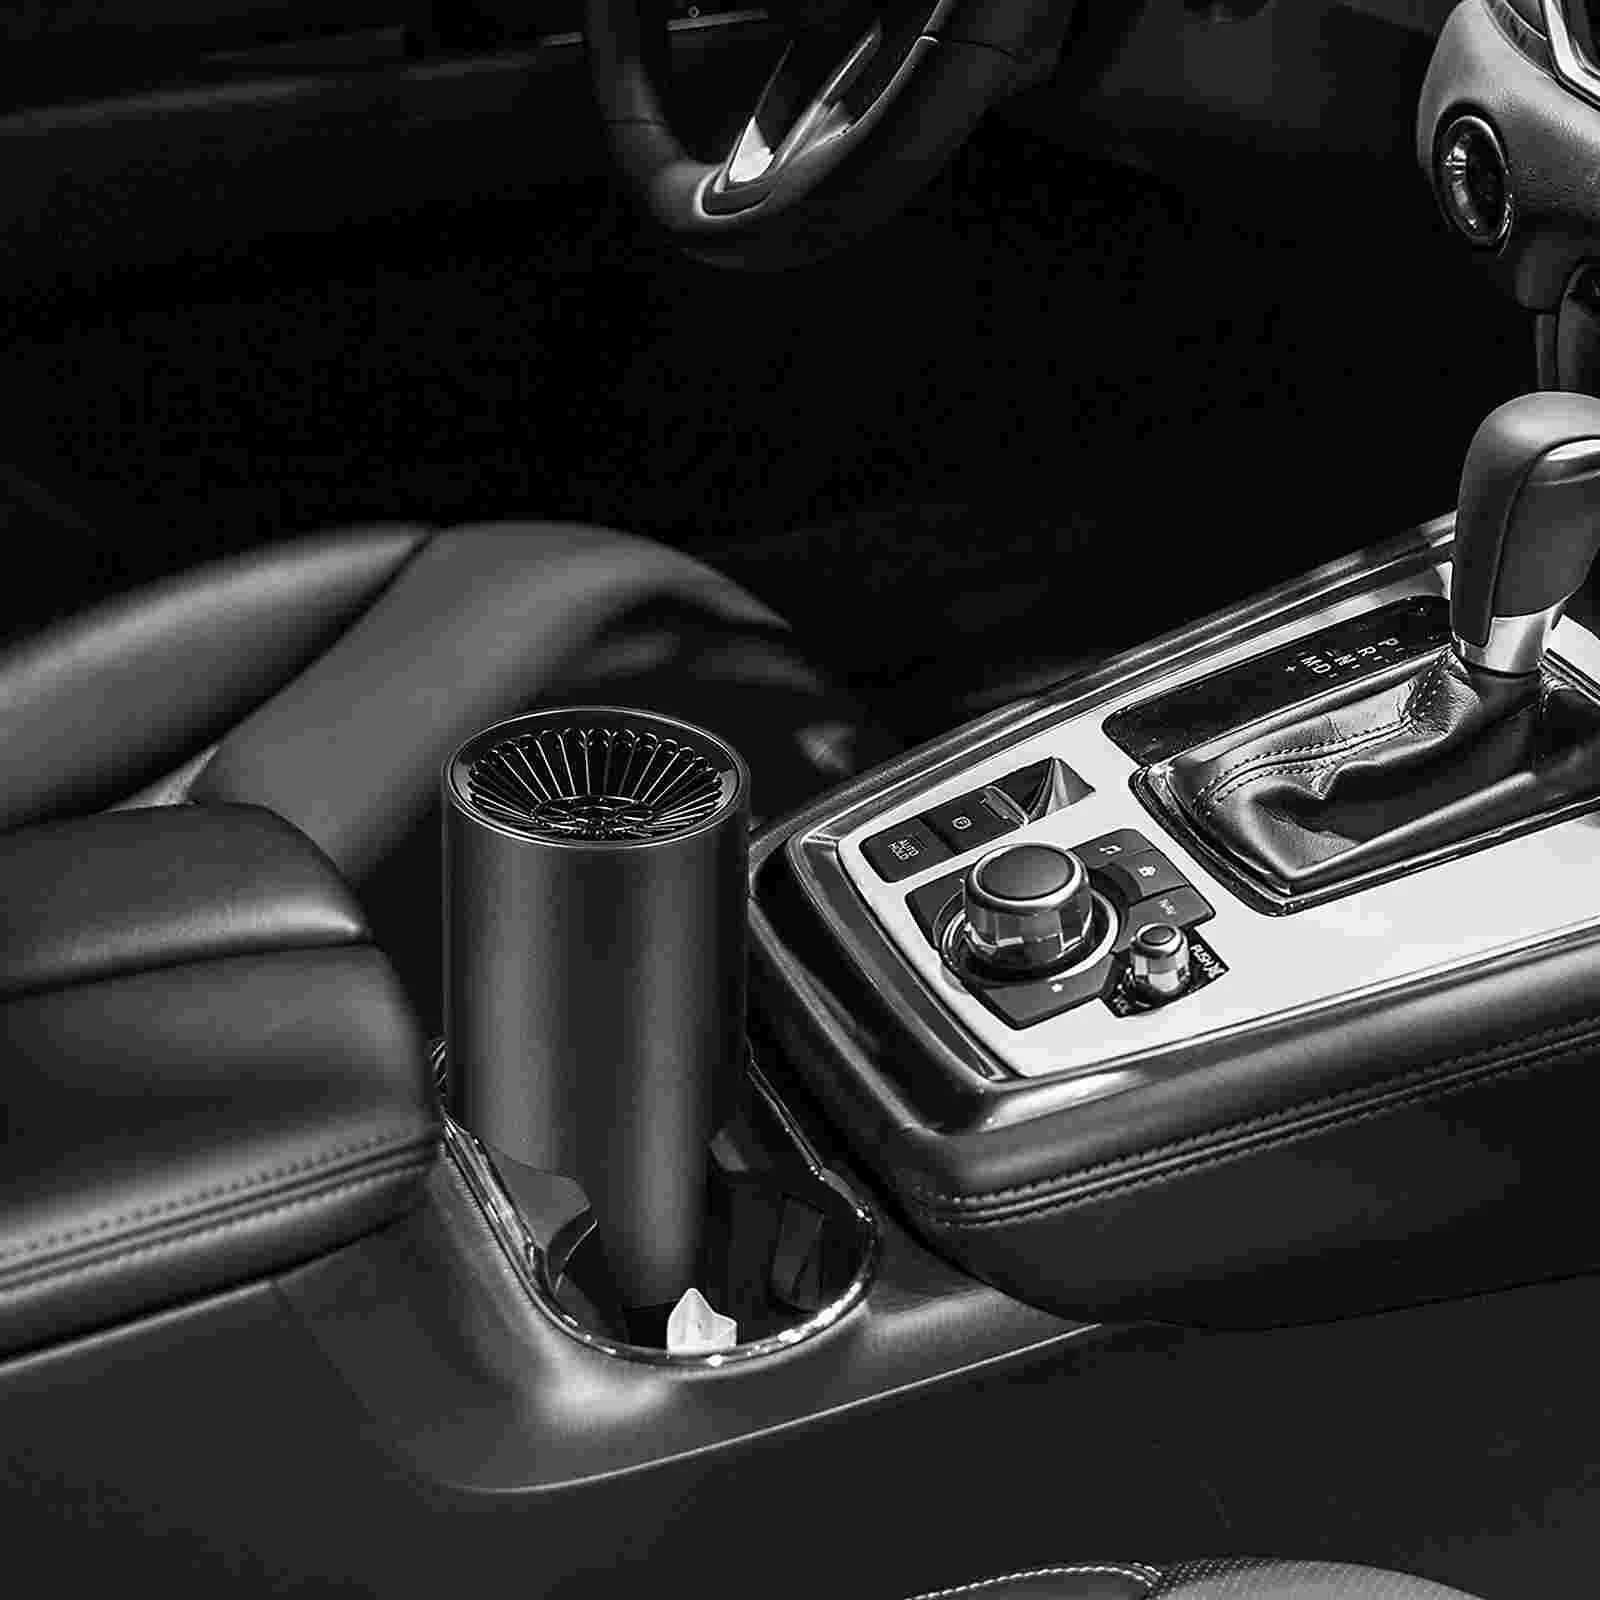 Car Defogger Heater In-Car Windshield Defroster Portable Car Fan